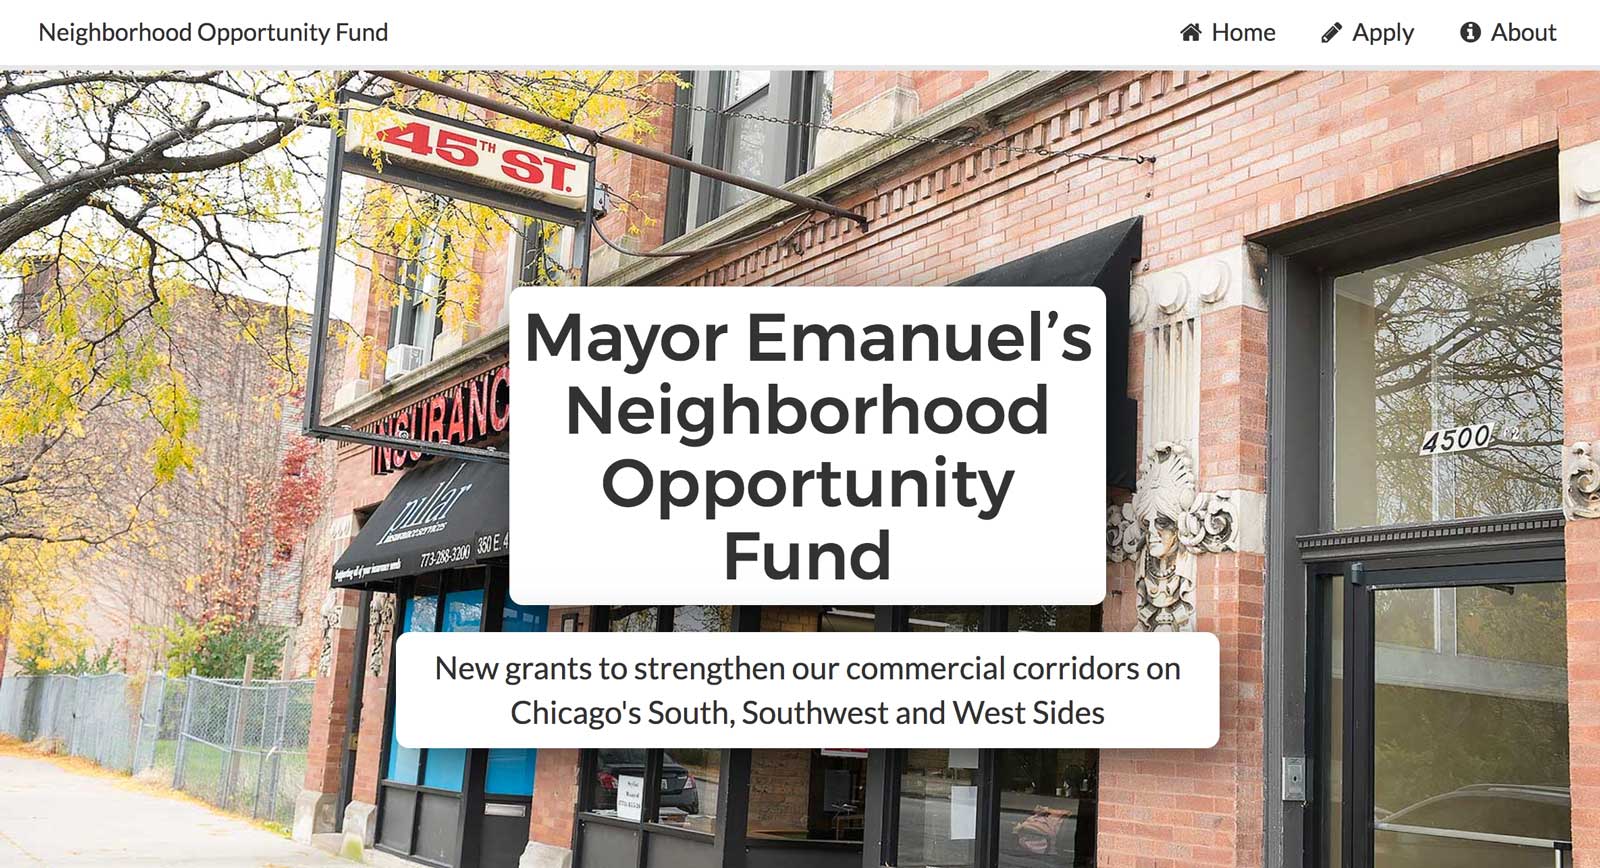 Neighborhood Opportunity Fund homepage